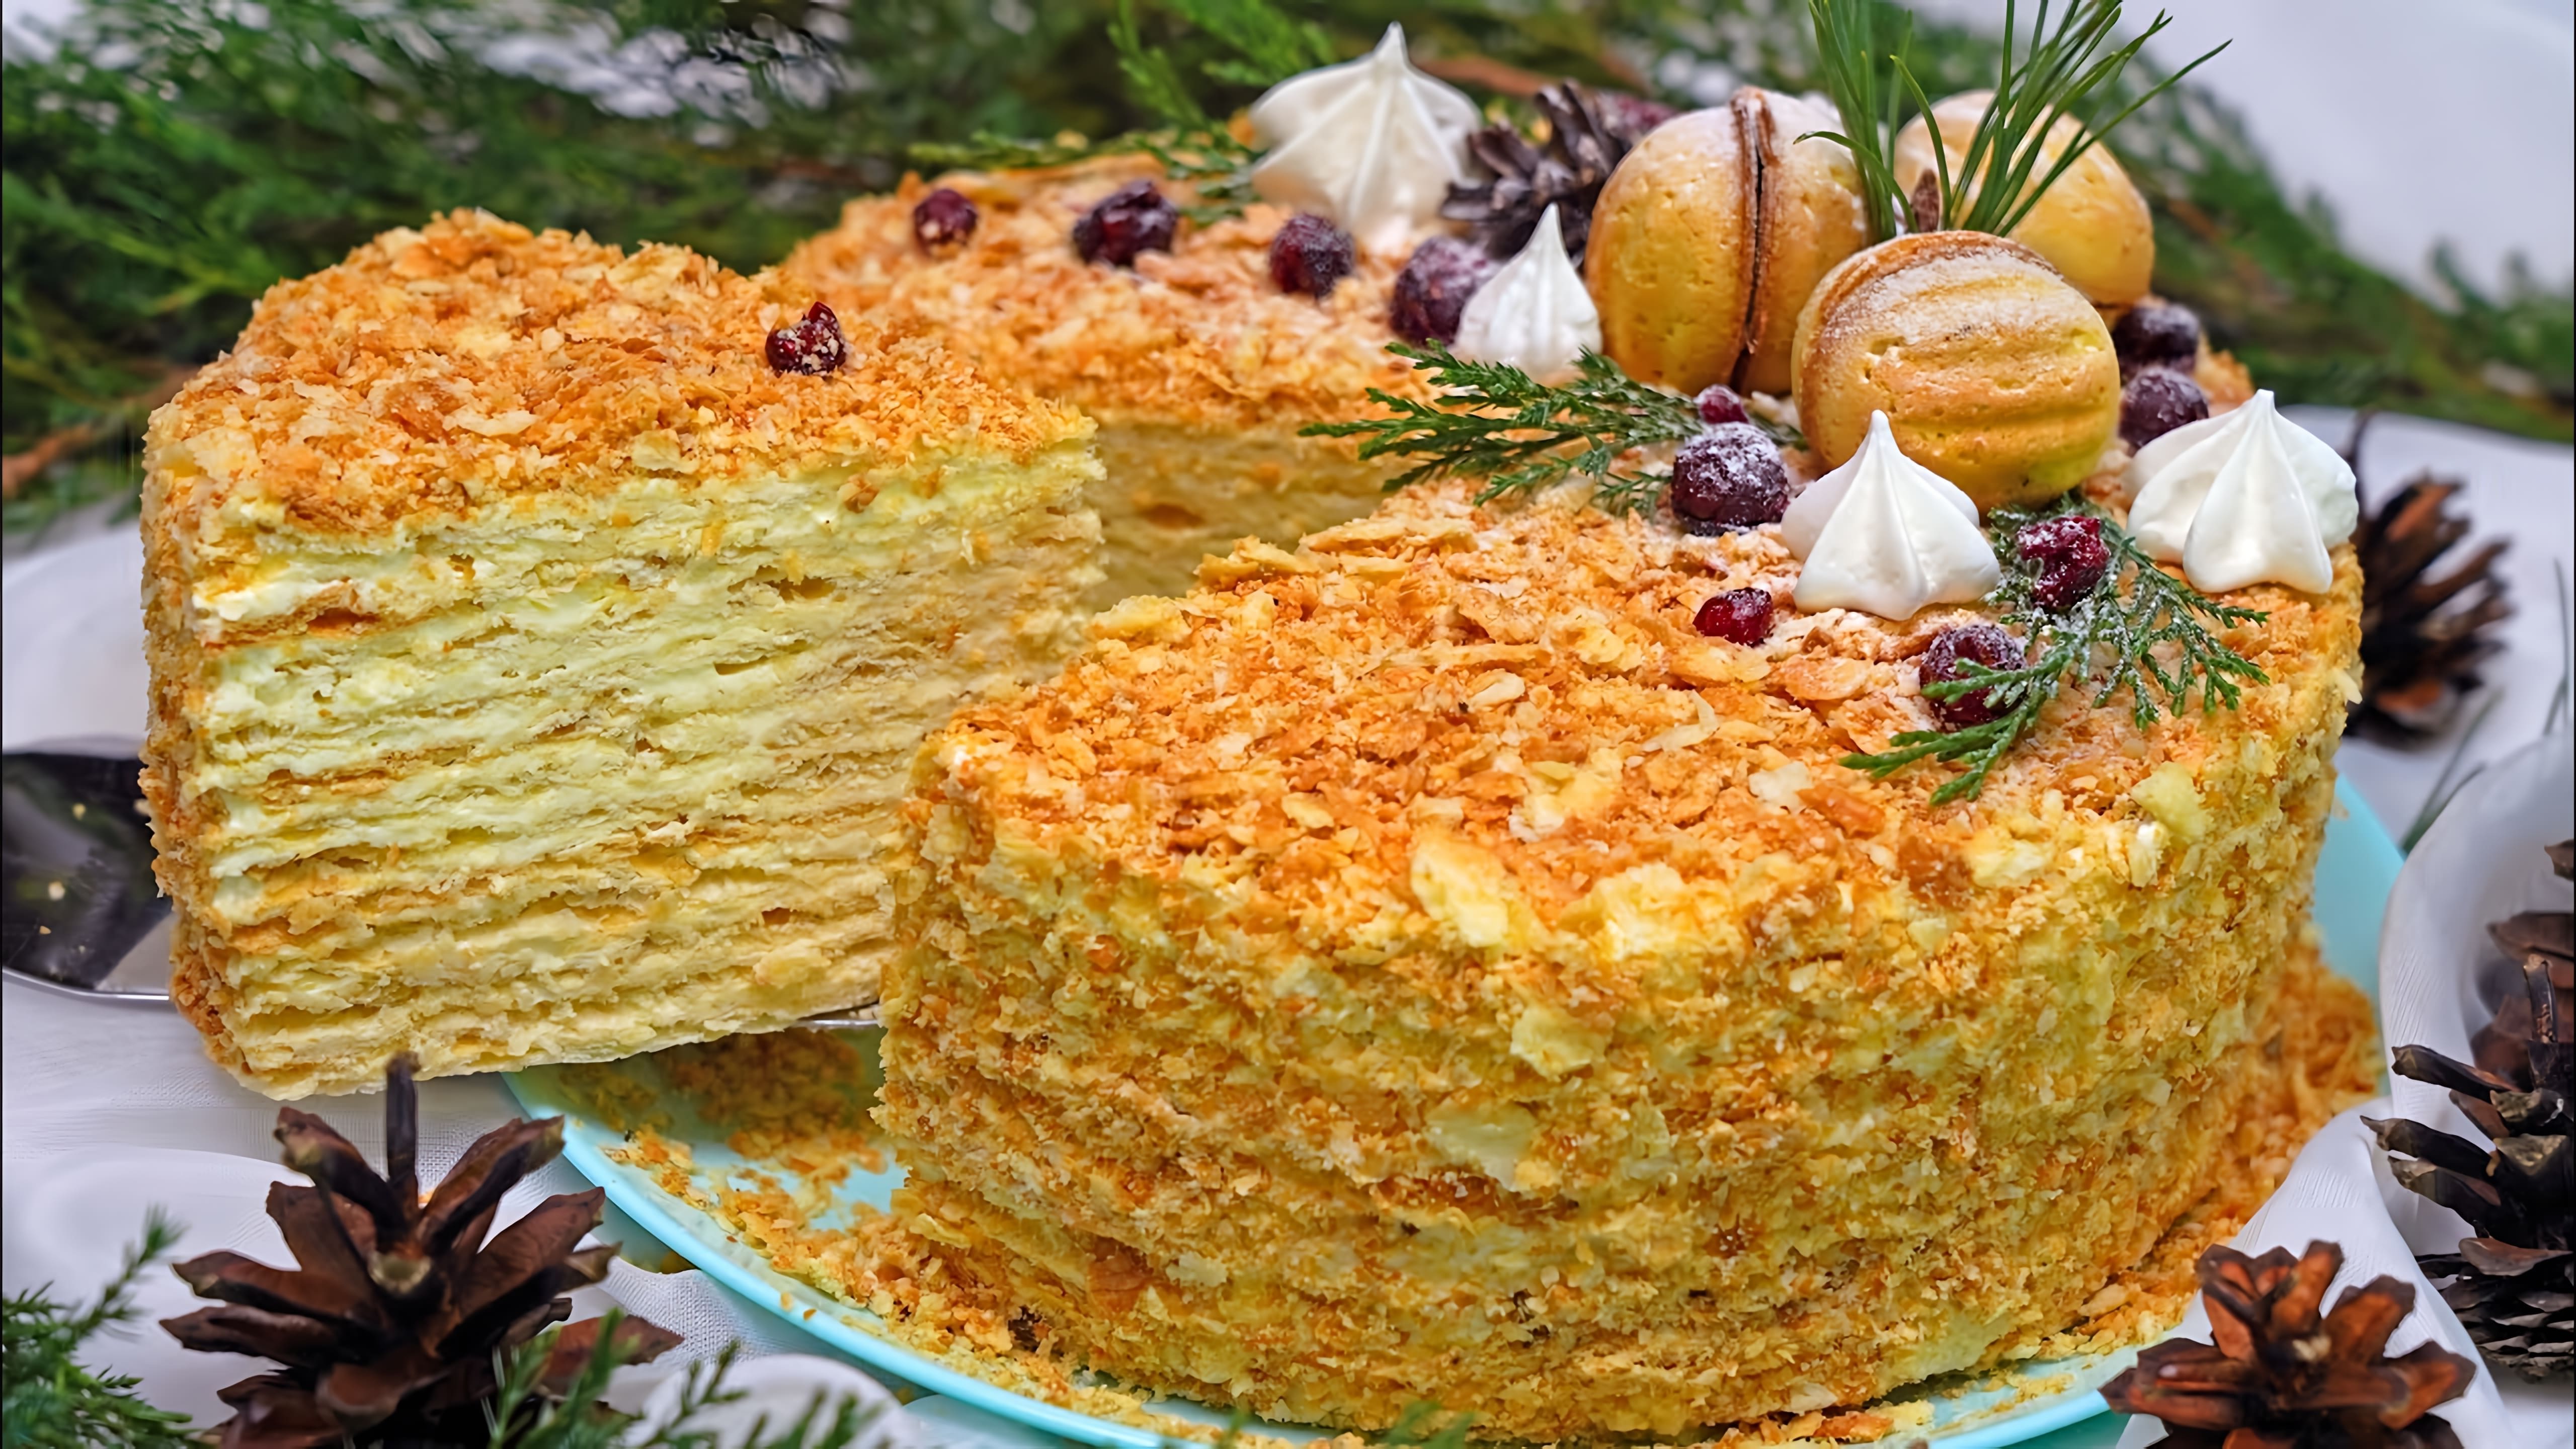 В этом видео представлен рецепт приготовления домашнего торта "Наполеон" с хрустящими слоеными коржами и нежным кремом